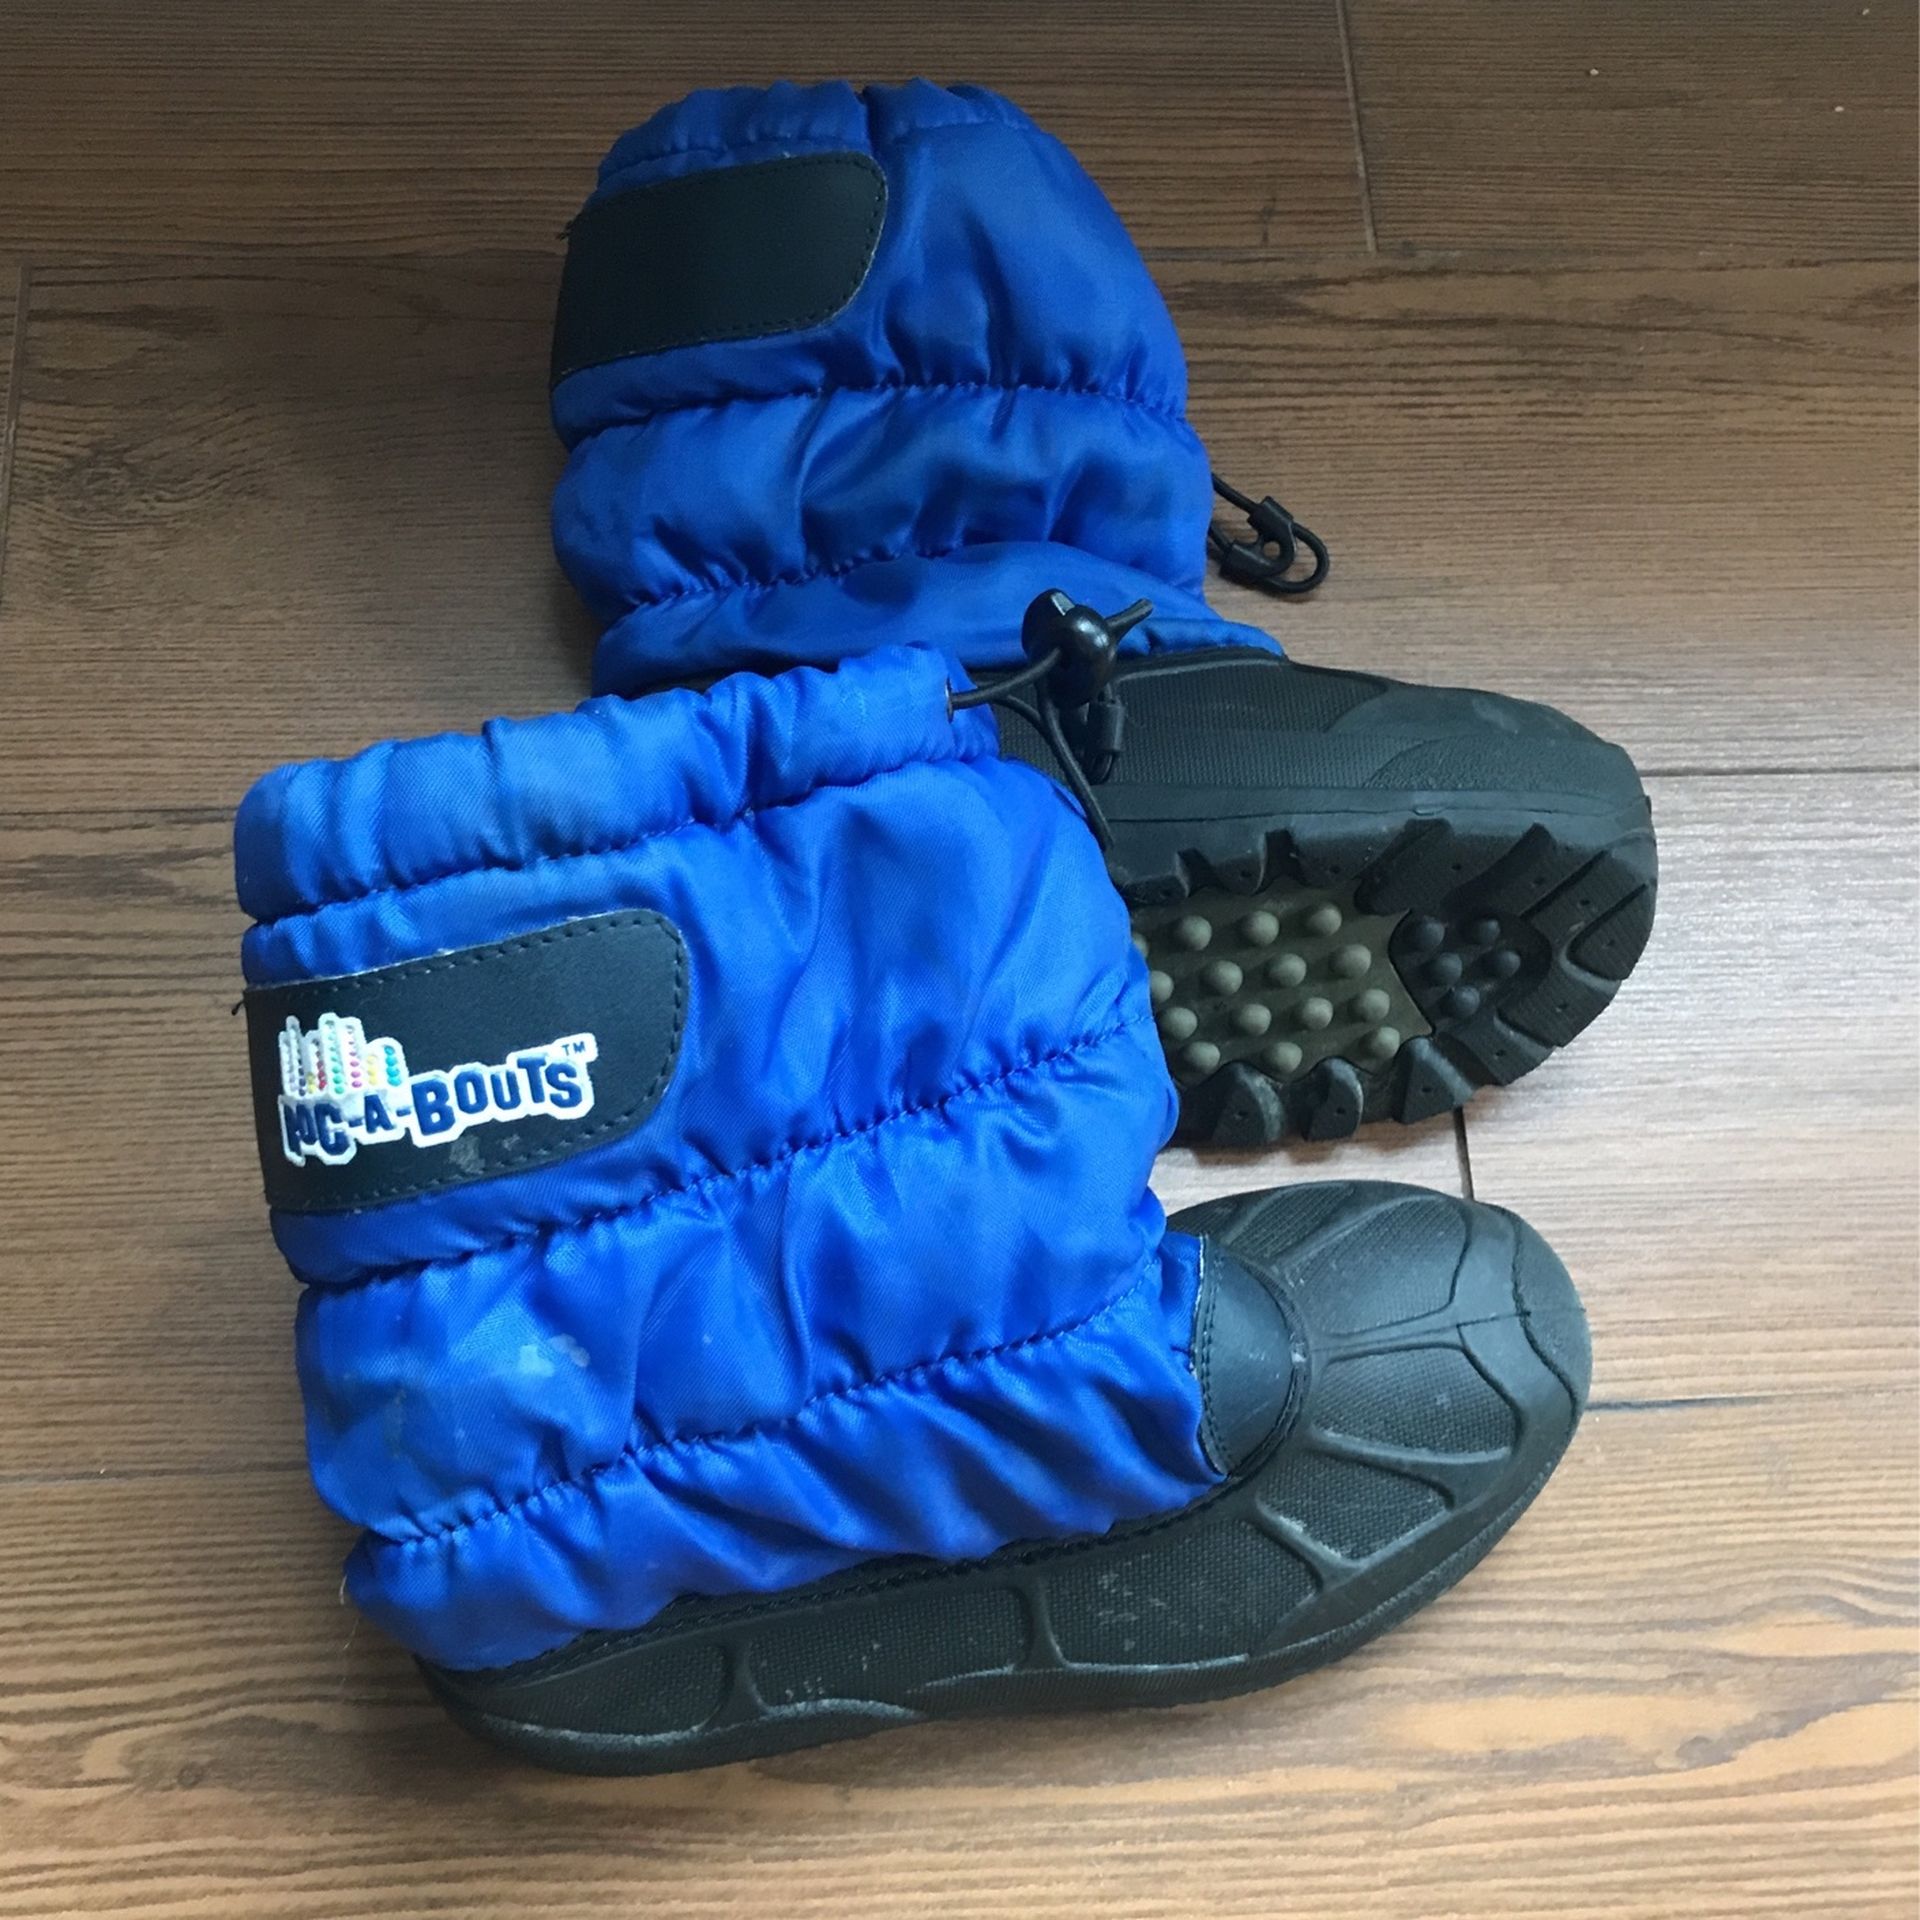 Kids Children Snow Boots Size 1